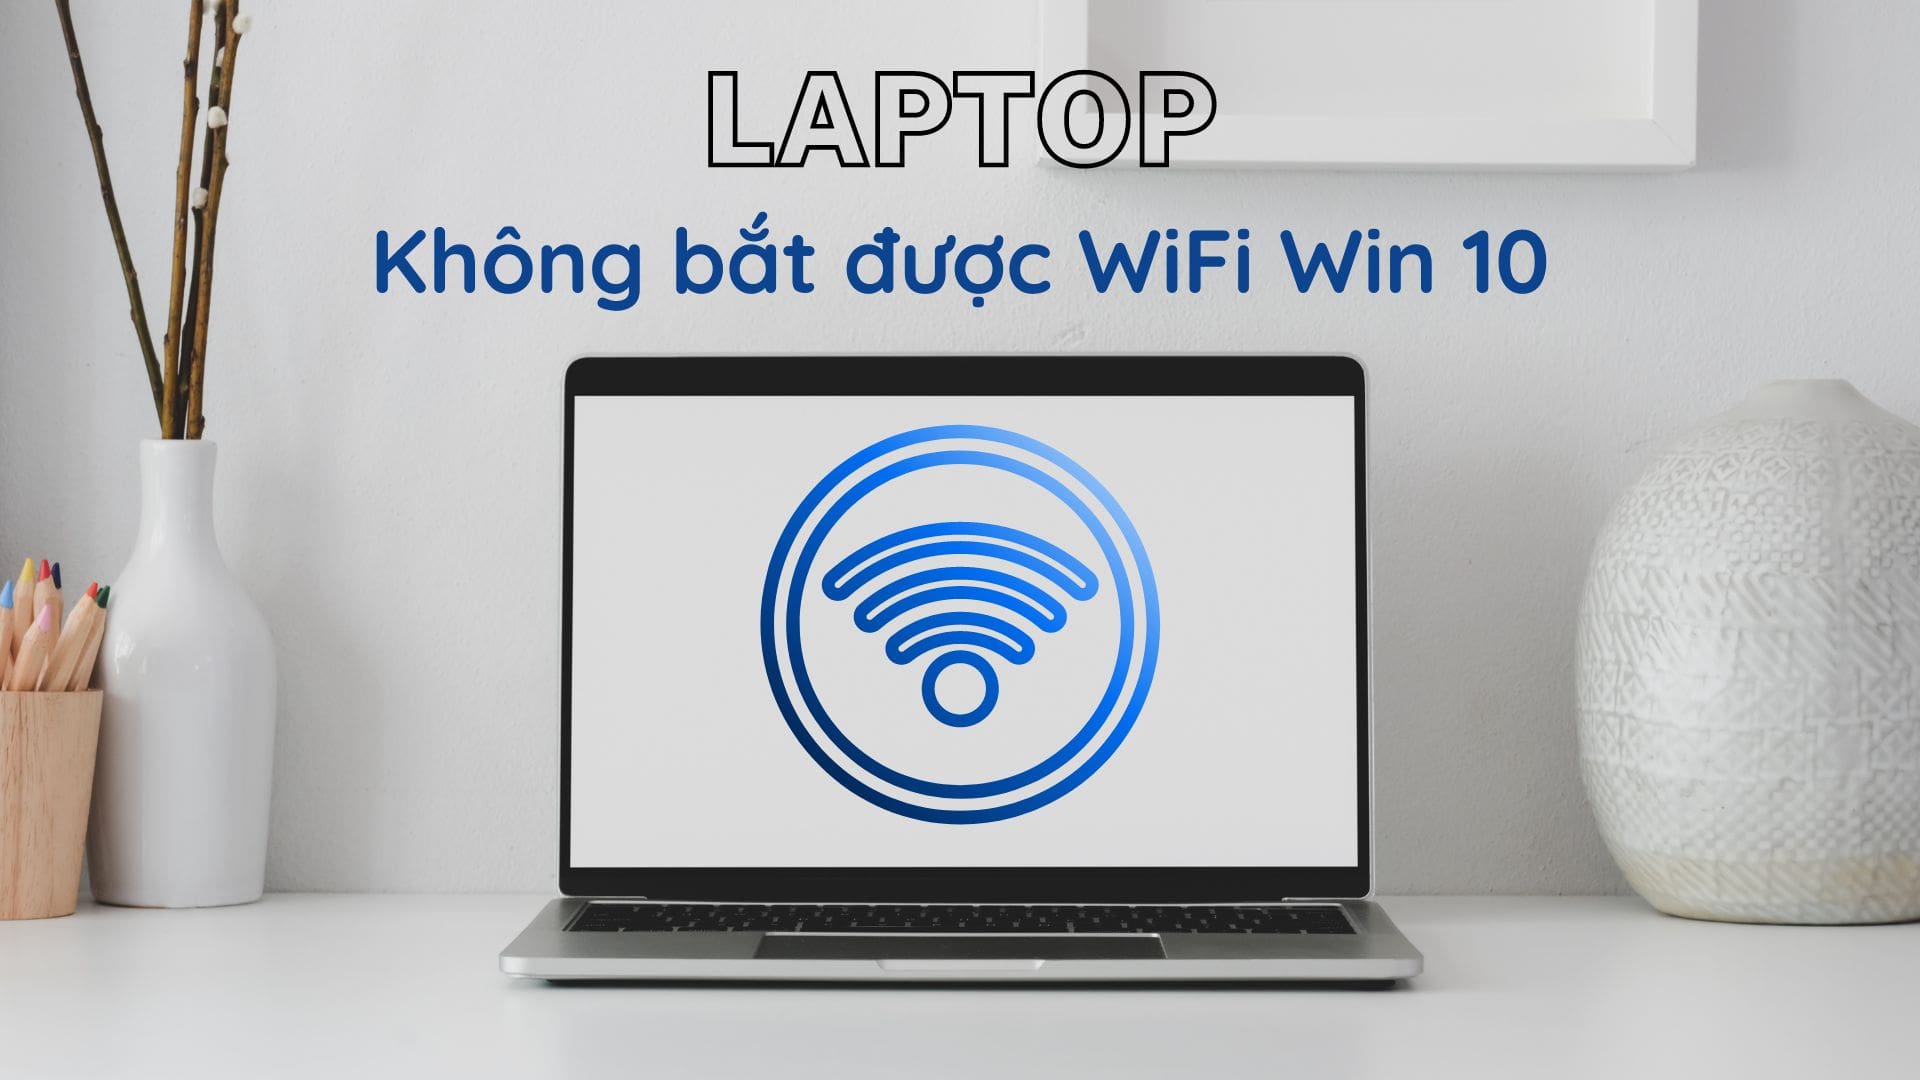 Laptop không bắt được wifi win 10 có phải vấn đề nghiêm trọng không? Hướng dẫn khắc phục lỗi wifi win 10 đơn giản, hiệu quả tại nhà